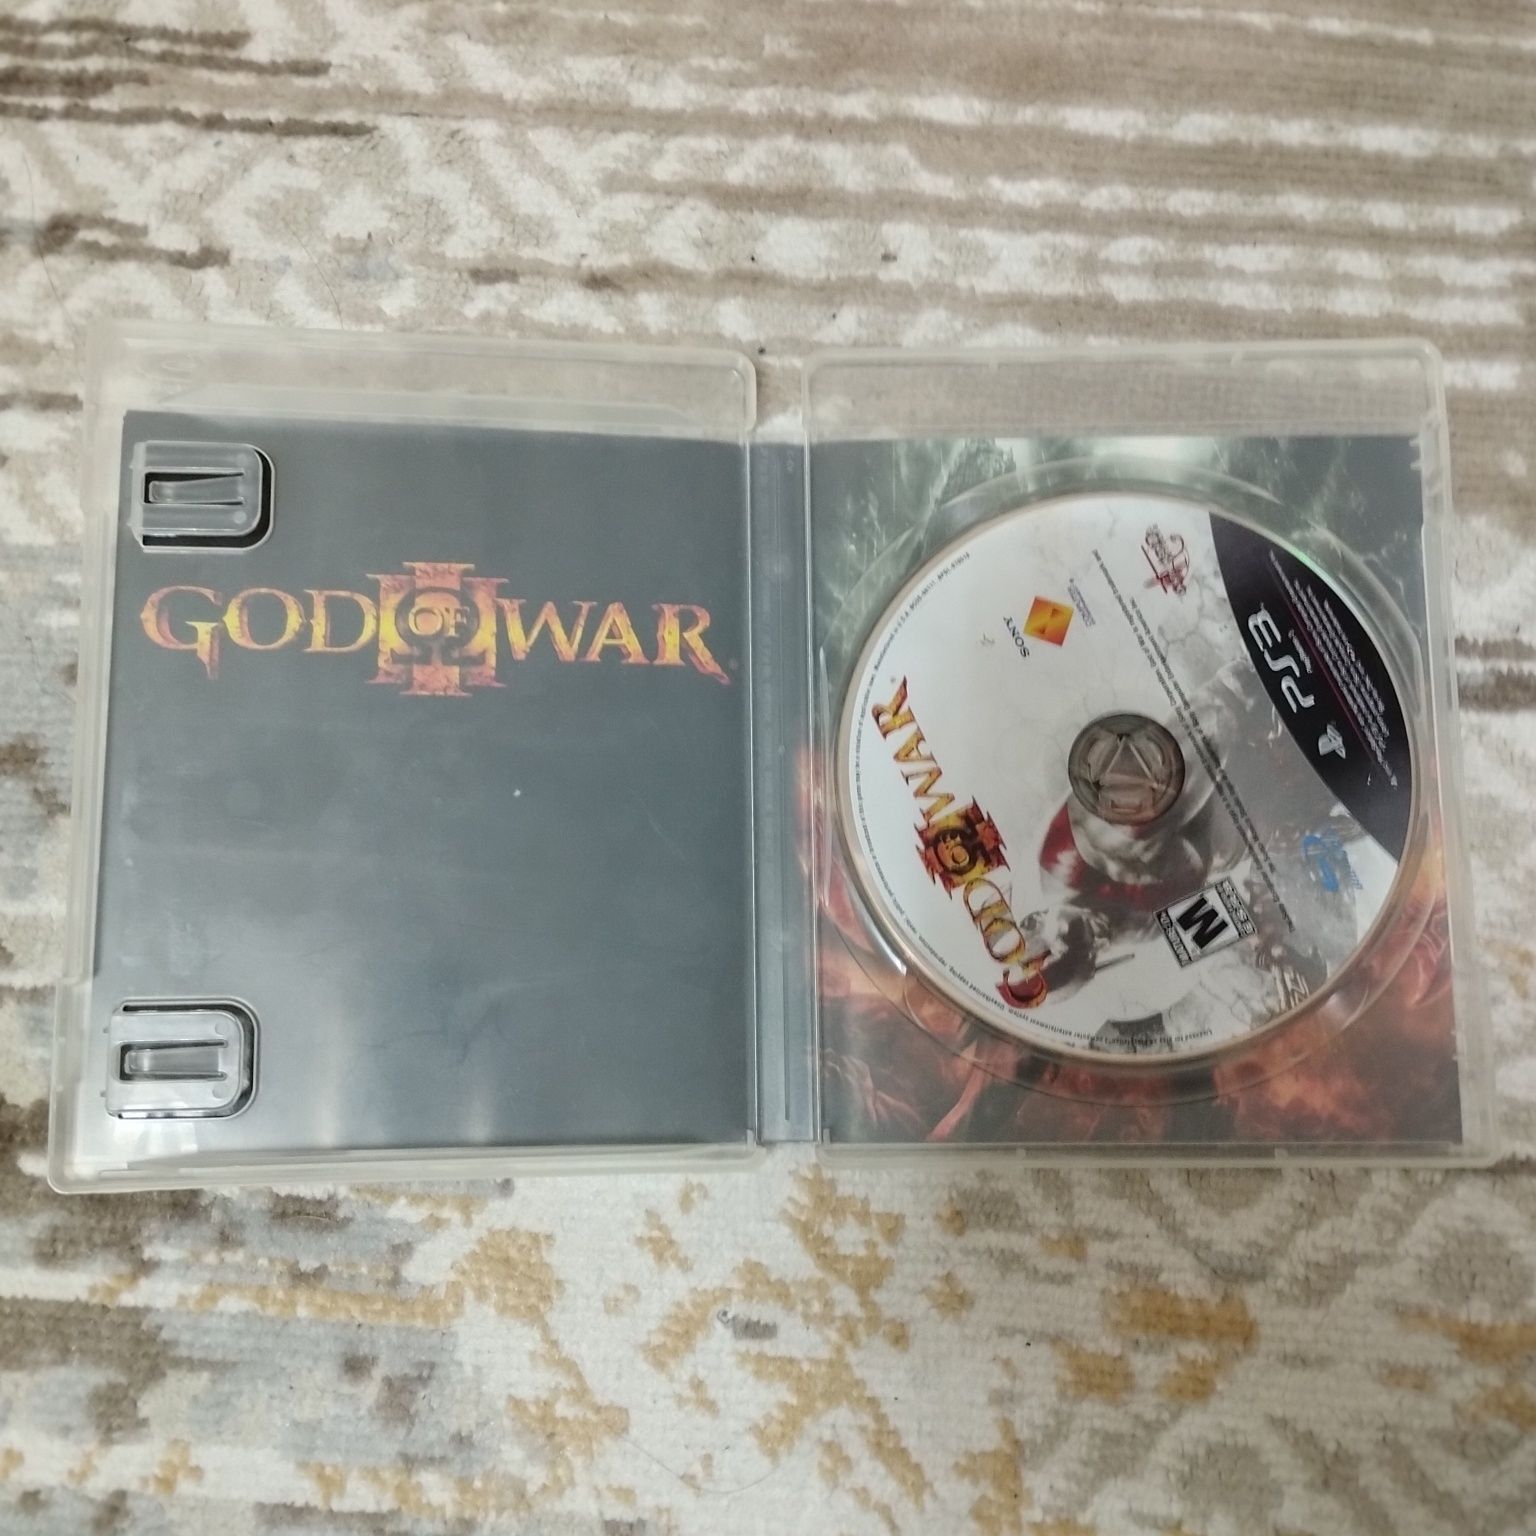 Игры на пс 3 god of war 3